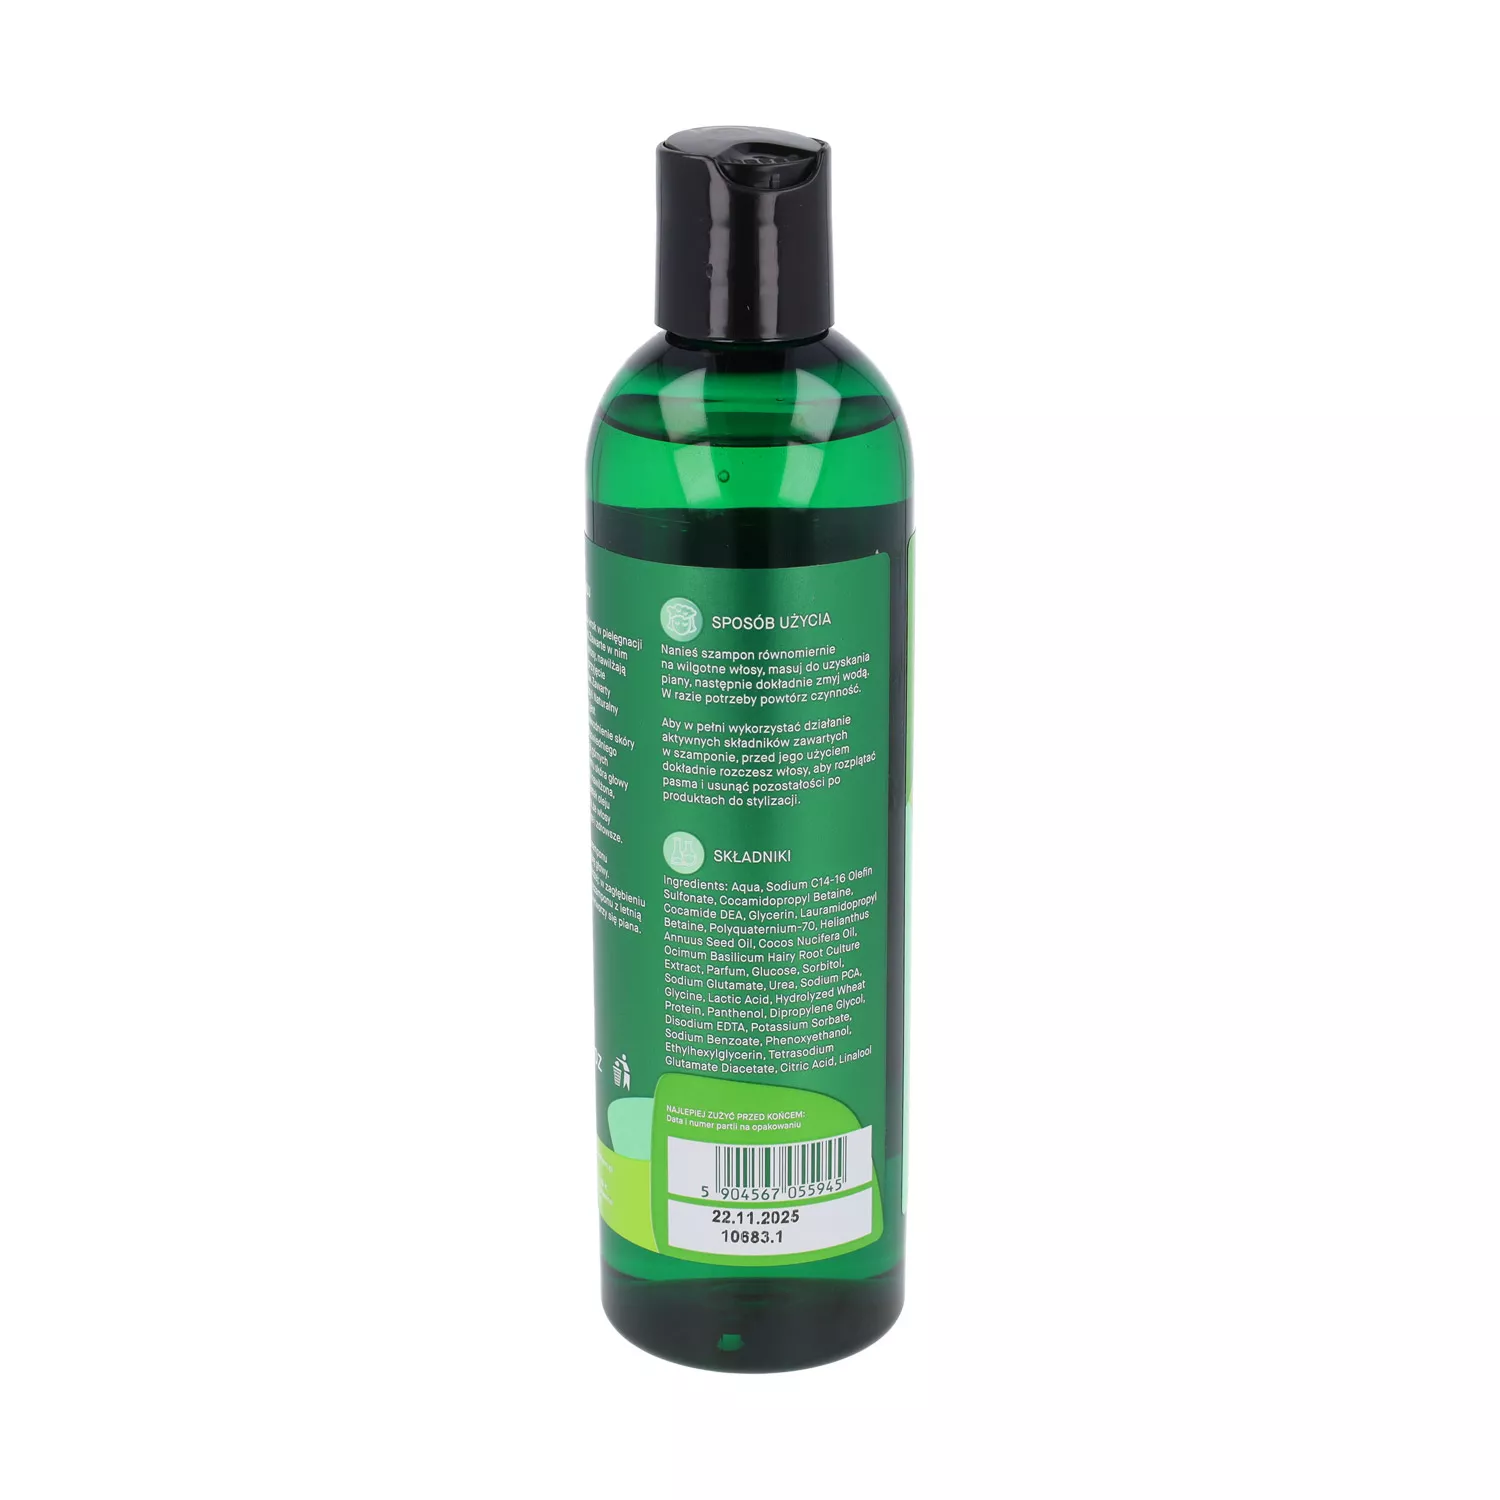 szampon wzmacniający przeciw wypadaniu włosów bazylia nmf